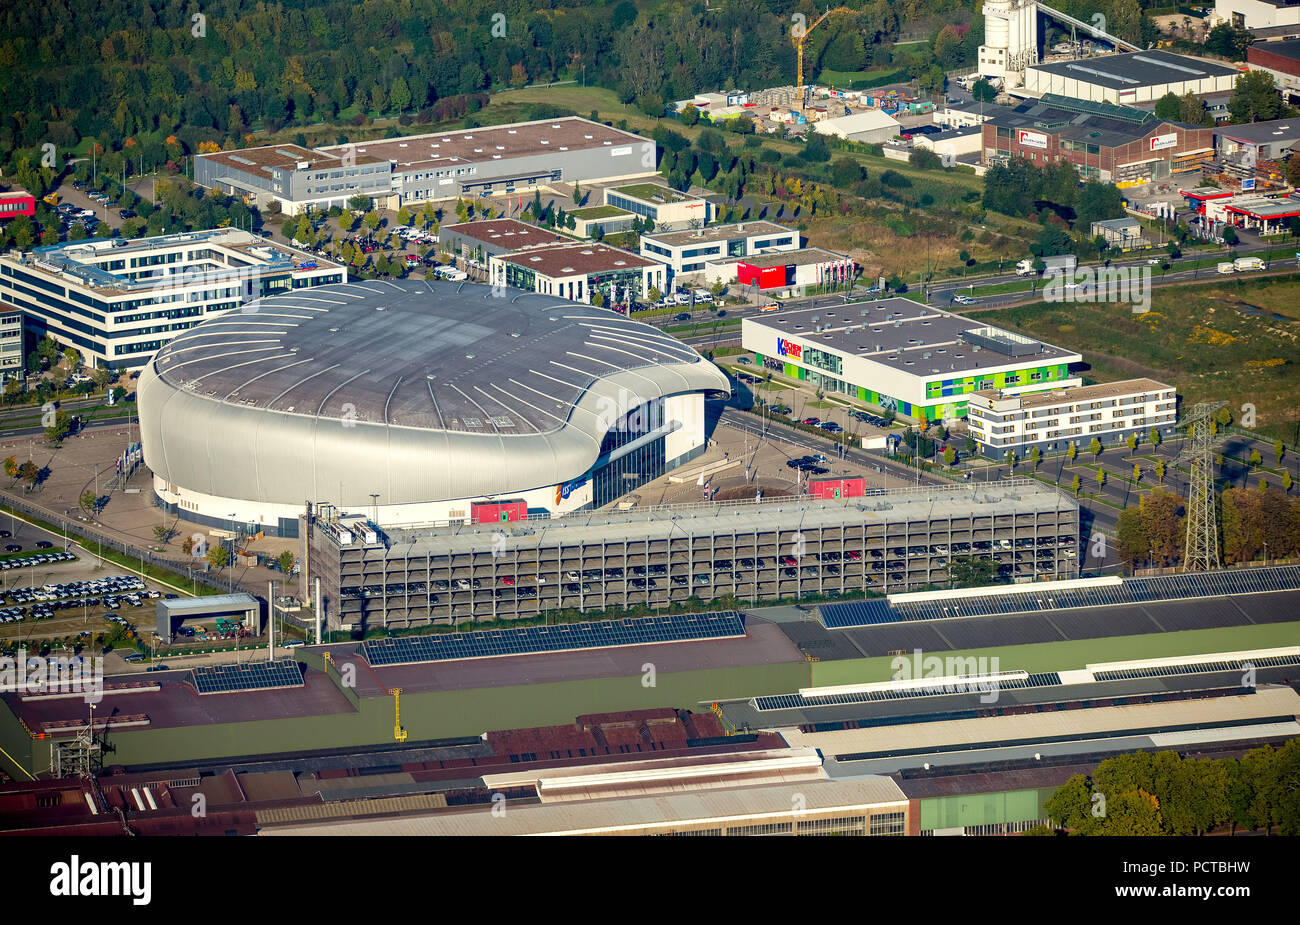 Vue aérienne, ISS Dome, grande salle pour les tournois de hockey sur glace et d'autres événements sportifs, ainsi que des concerts de rock avec des stars internationales à Dusseldorf Banque D'Images